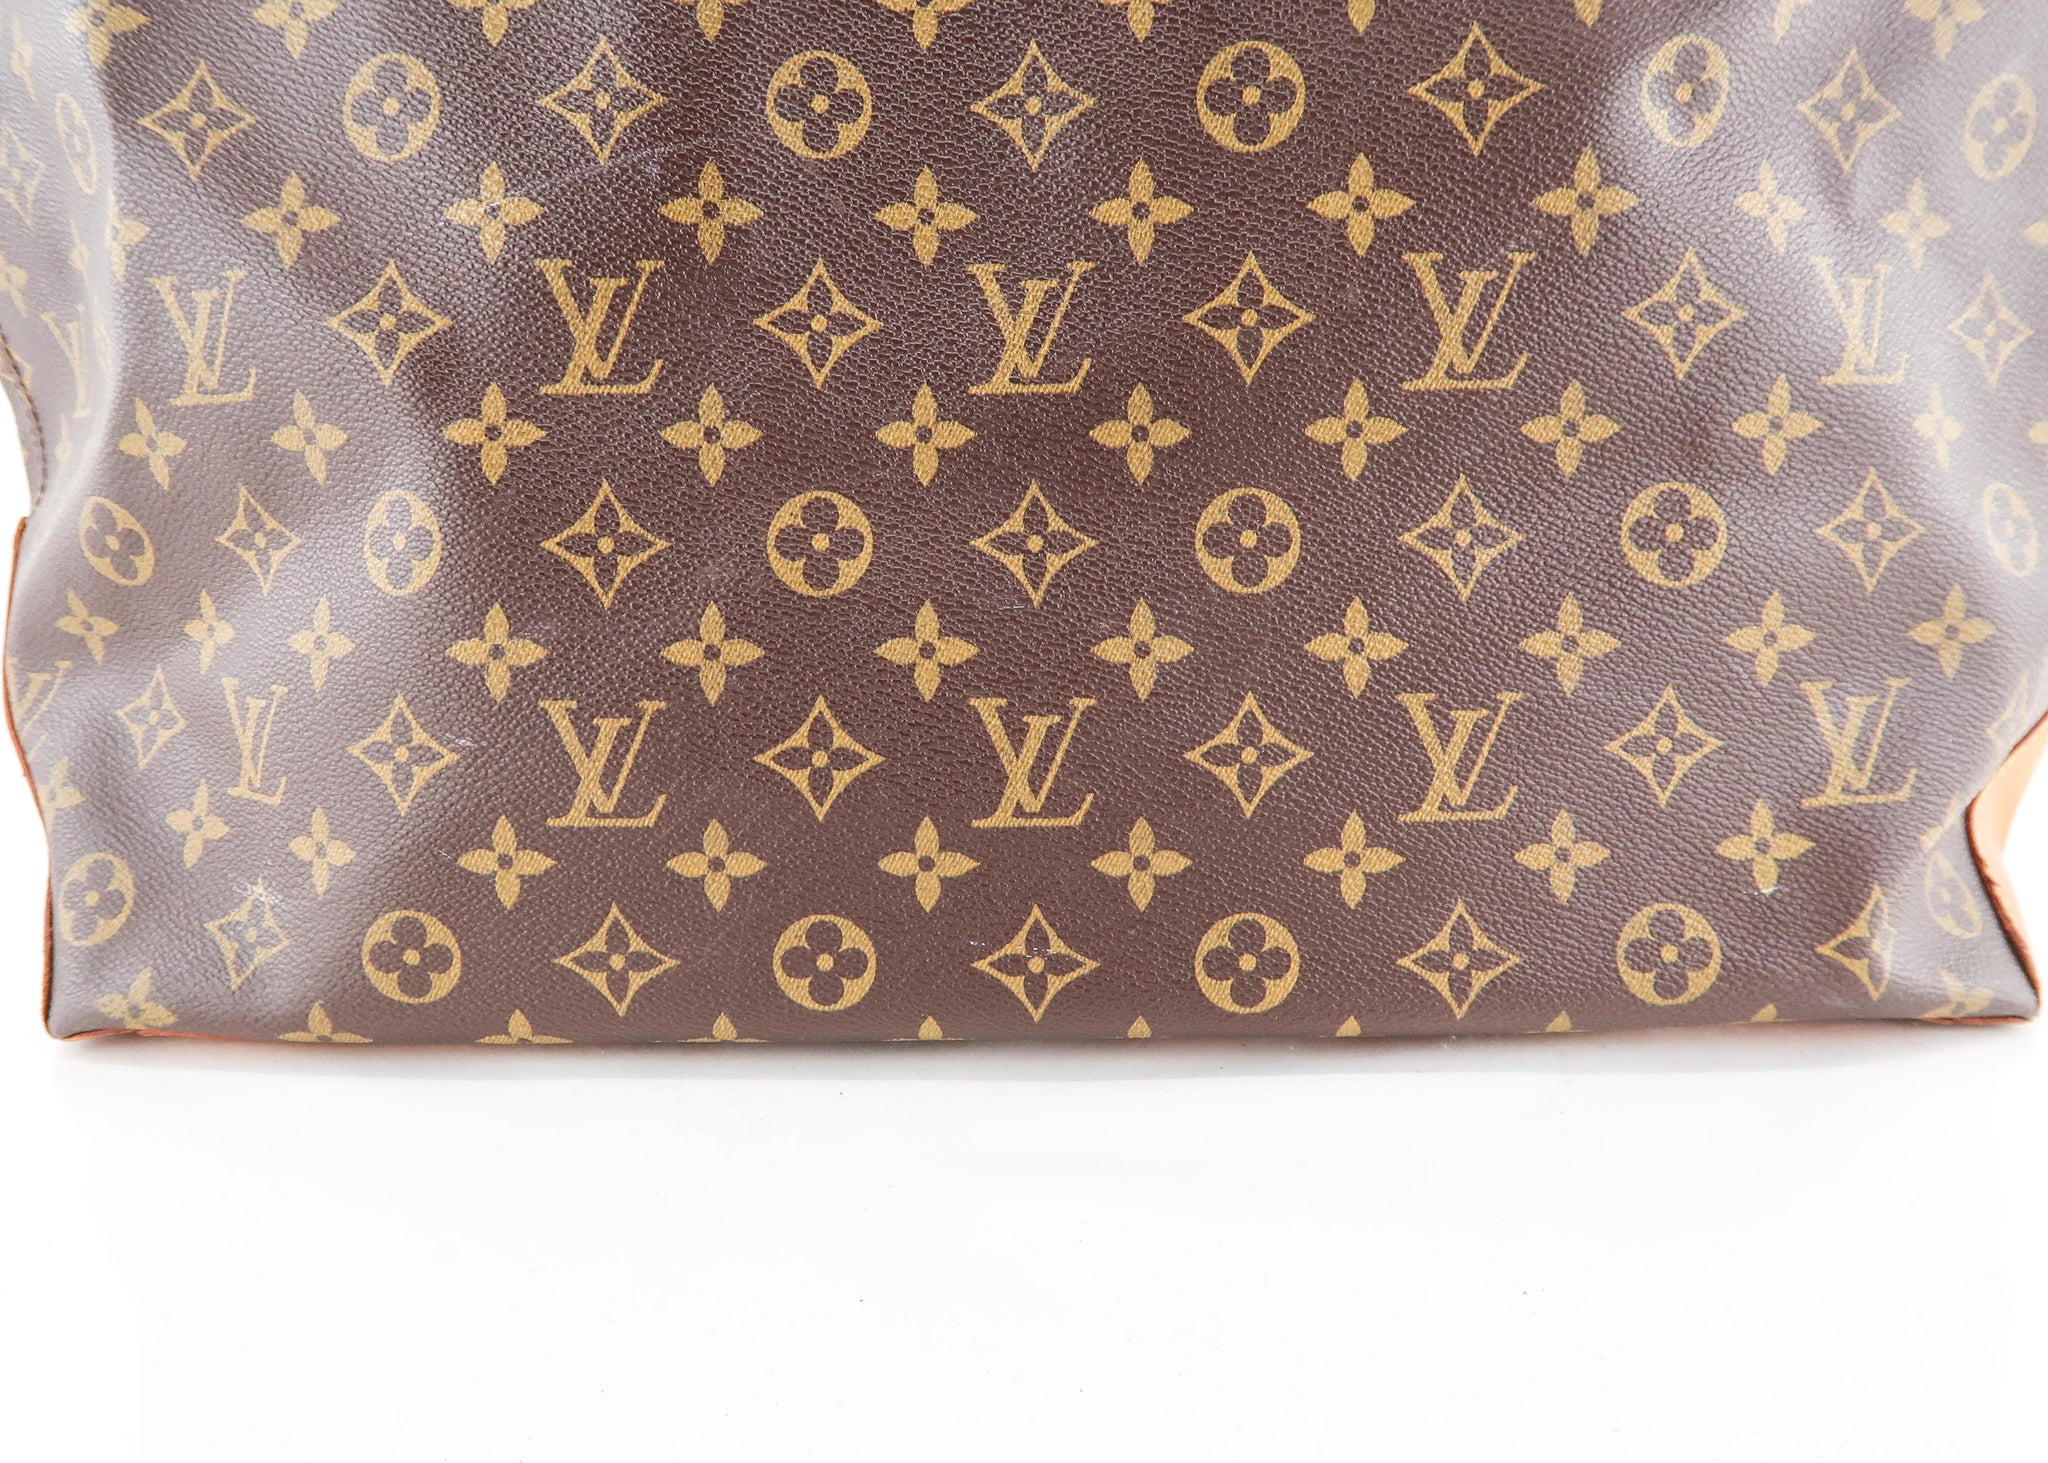 💯%authentic Louis Vuitton Cabas alto  Louis vuitton, Authentic louis  vuitton, Clothes design